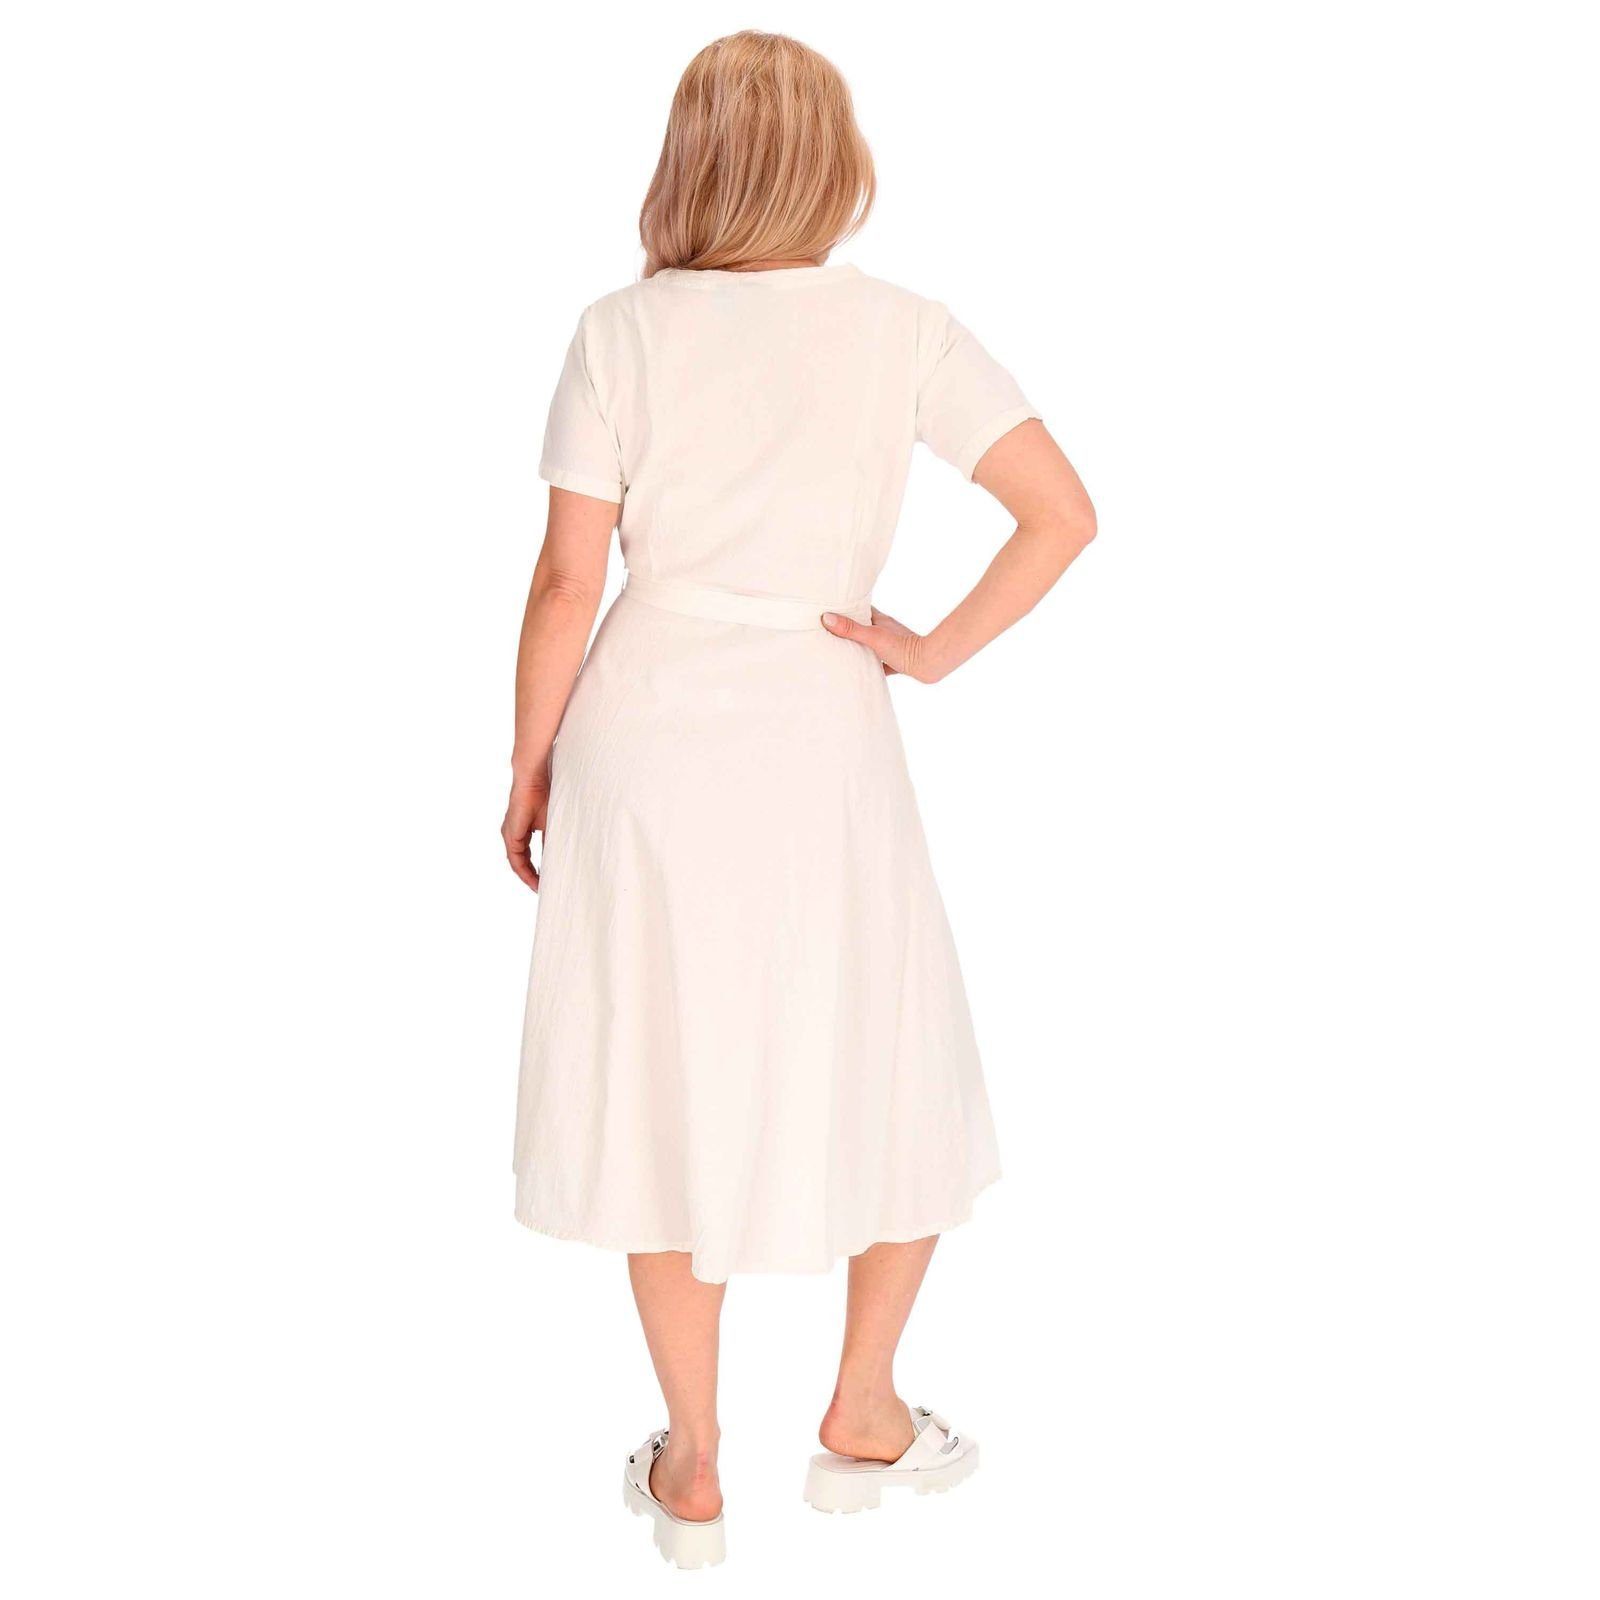 KUNST UND Boho Geköpft Kleid Weiß Latzhose Kleid MAGIE Hippie Sommerkleid Baumwoll Ibiza